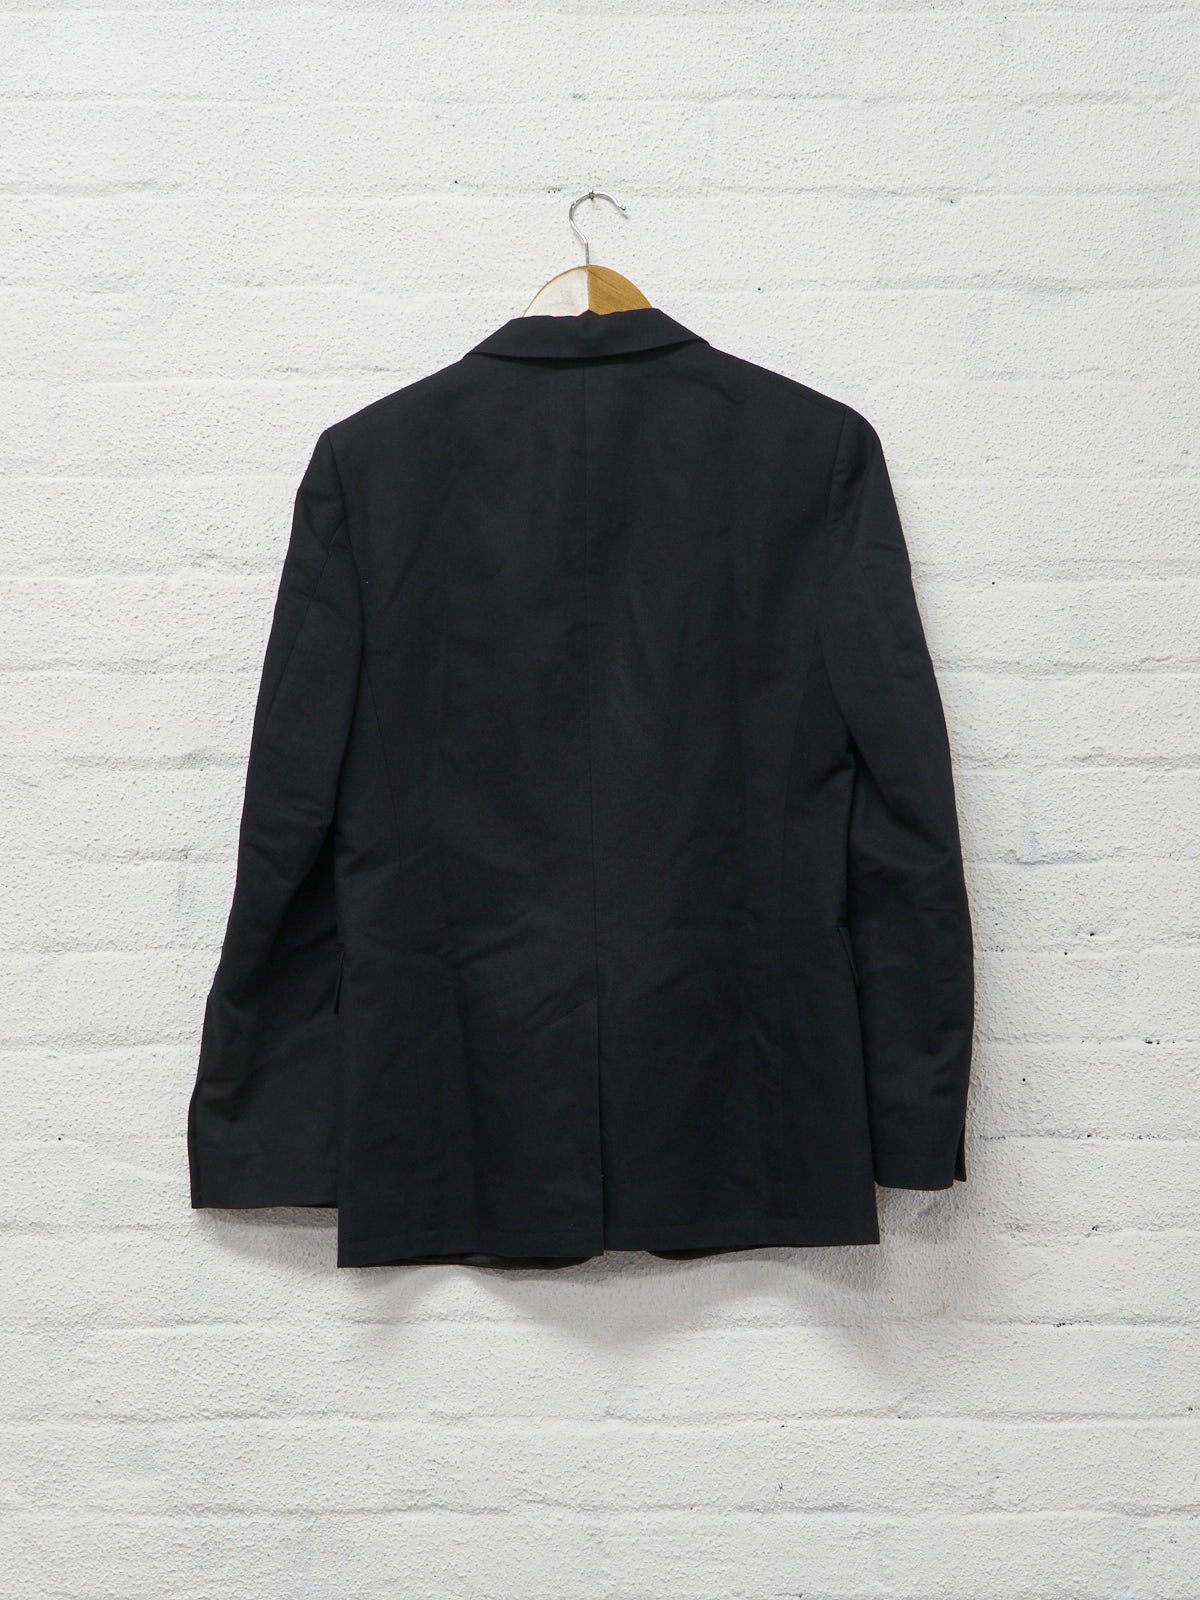 Dries Van Noten 2010 black cotton linen 3 button blazer - size 48 / S-M